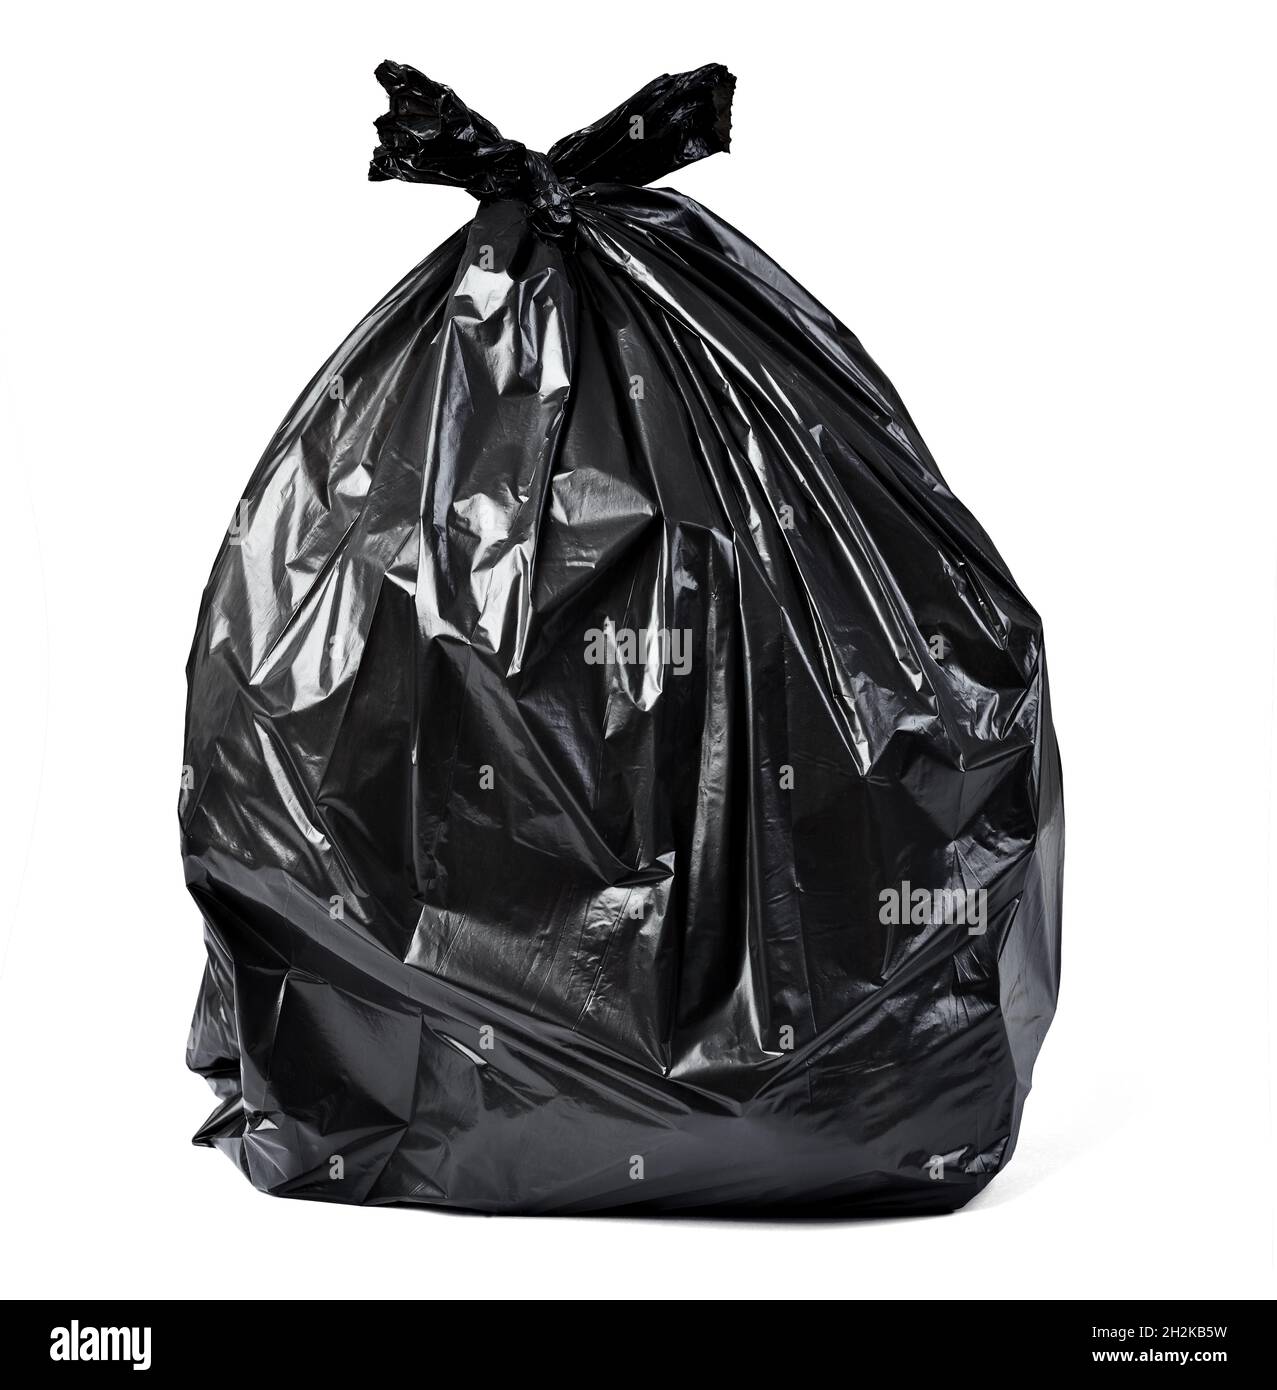 sac en plastique poubelle déchets environnement pollution déchets déchets vidage recyclage écologie bac noir jetable plein Banque D'Images